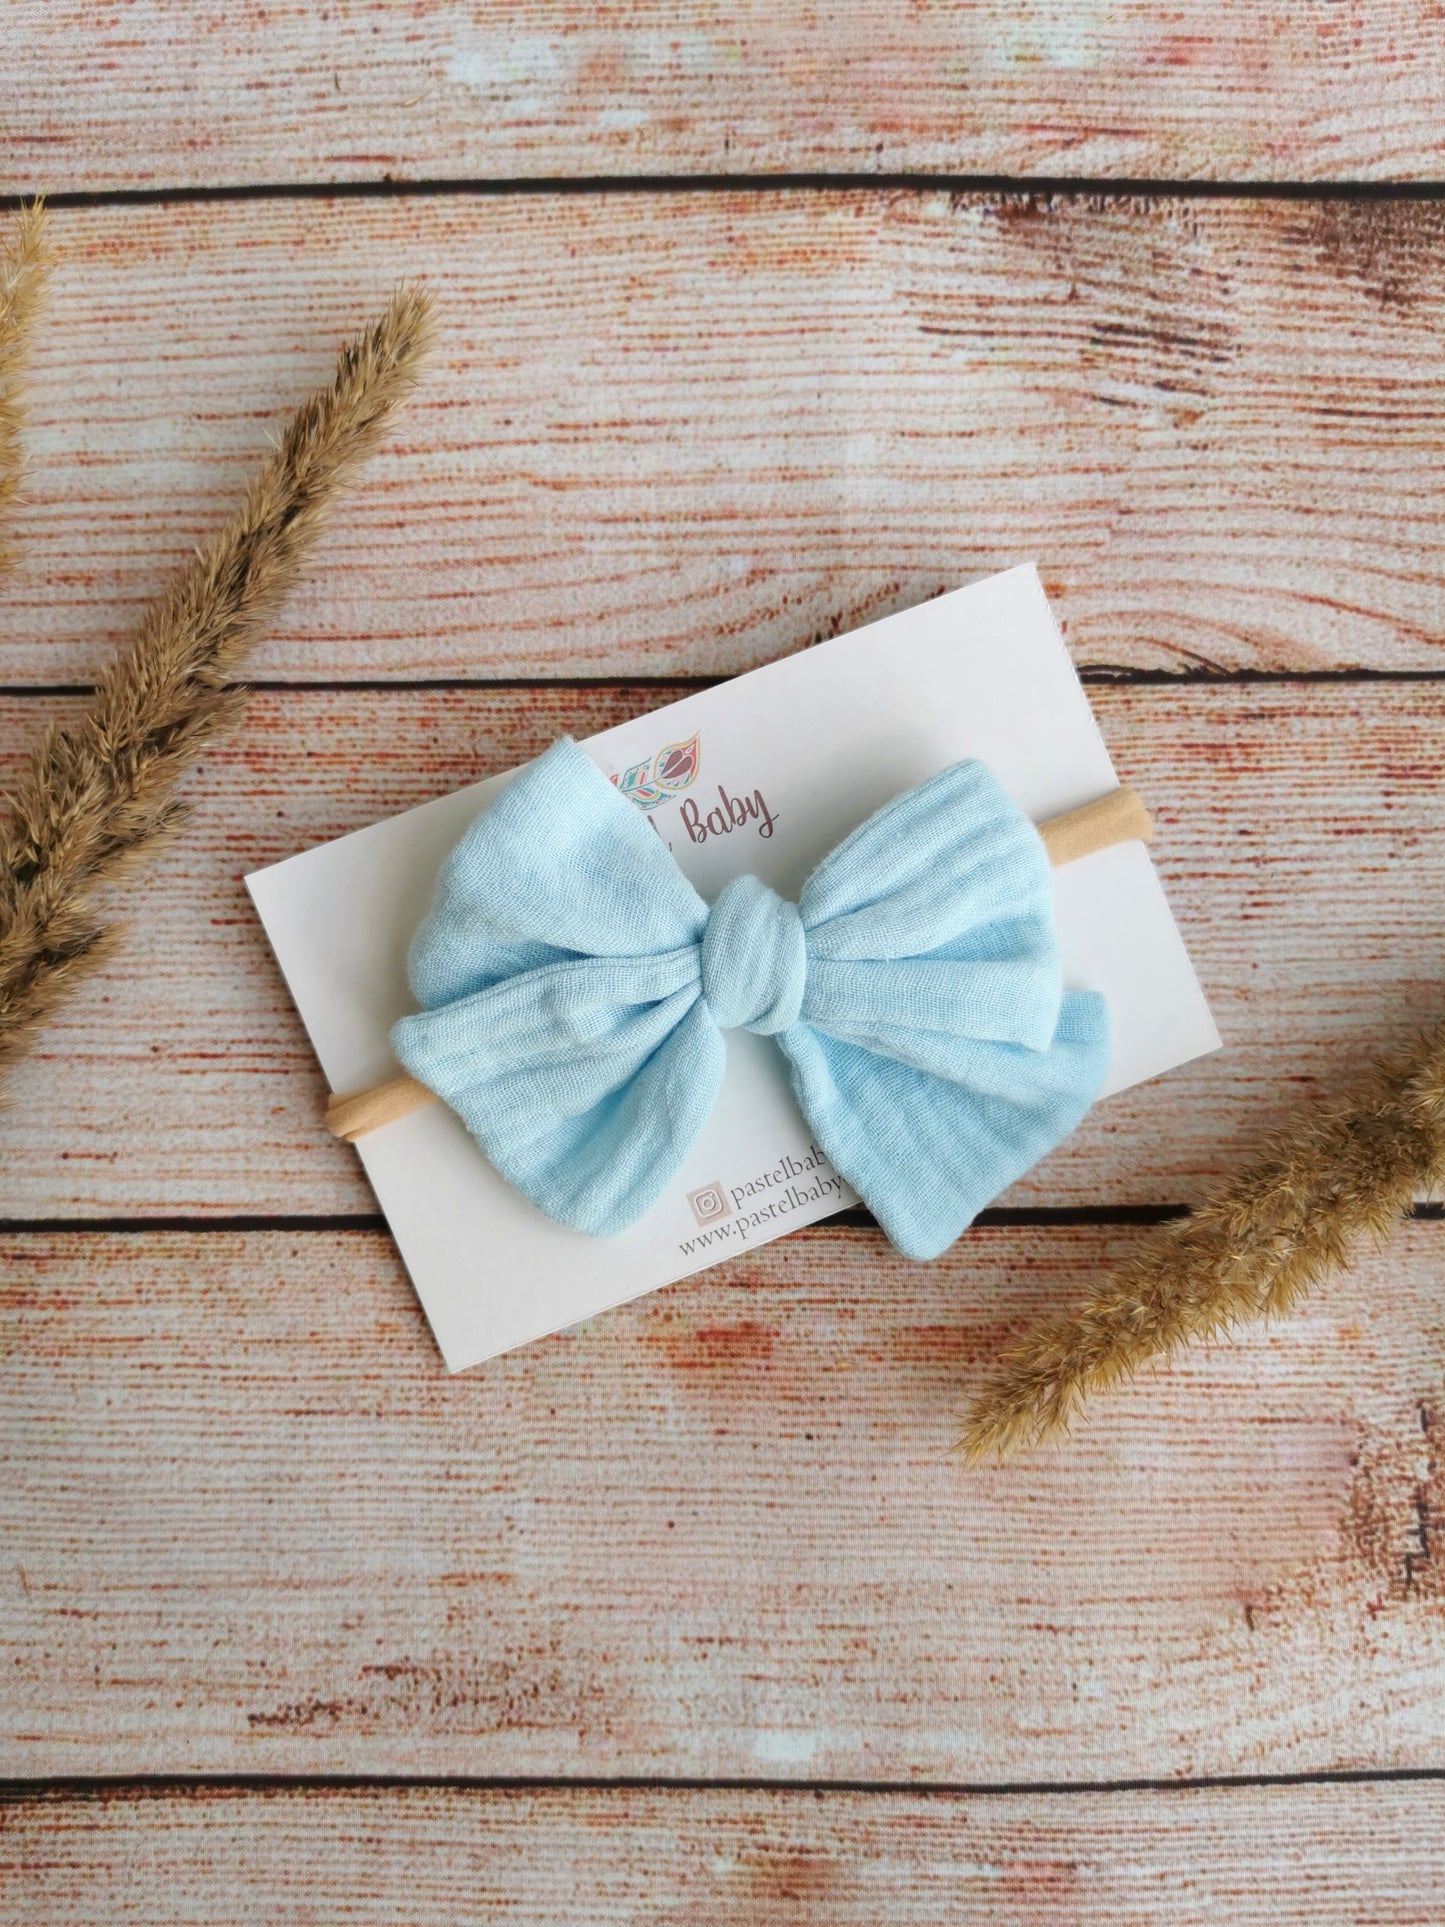 Large cotton headband bow, clip or hair tie - Light blue muslin hair bow